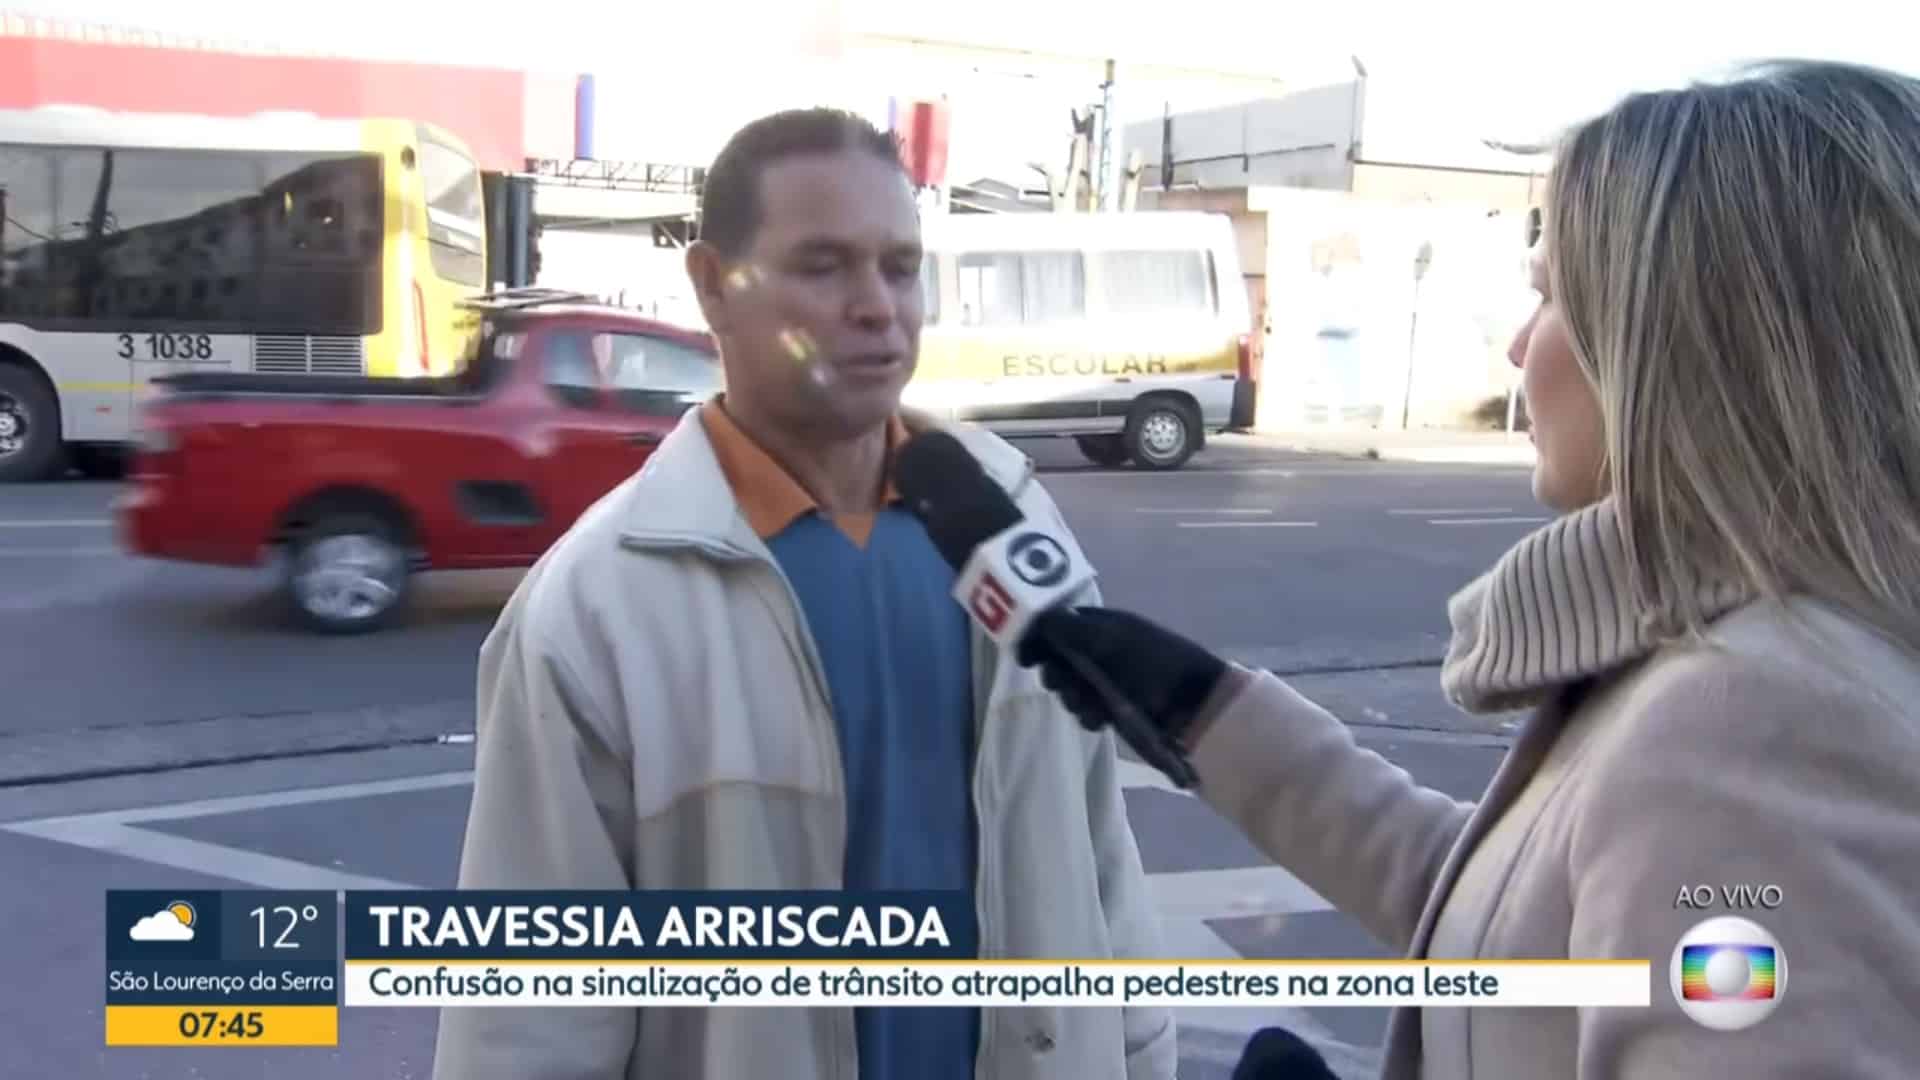 Ao vivo, repórter da Globo salva a vida de pedestre ao atravessar a rua